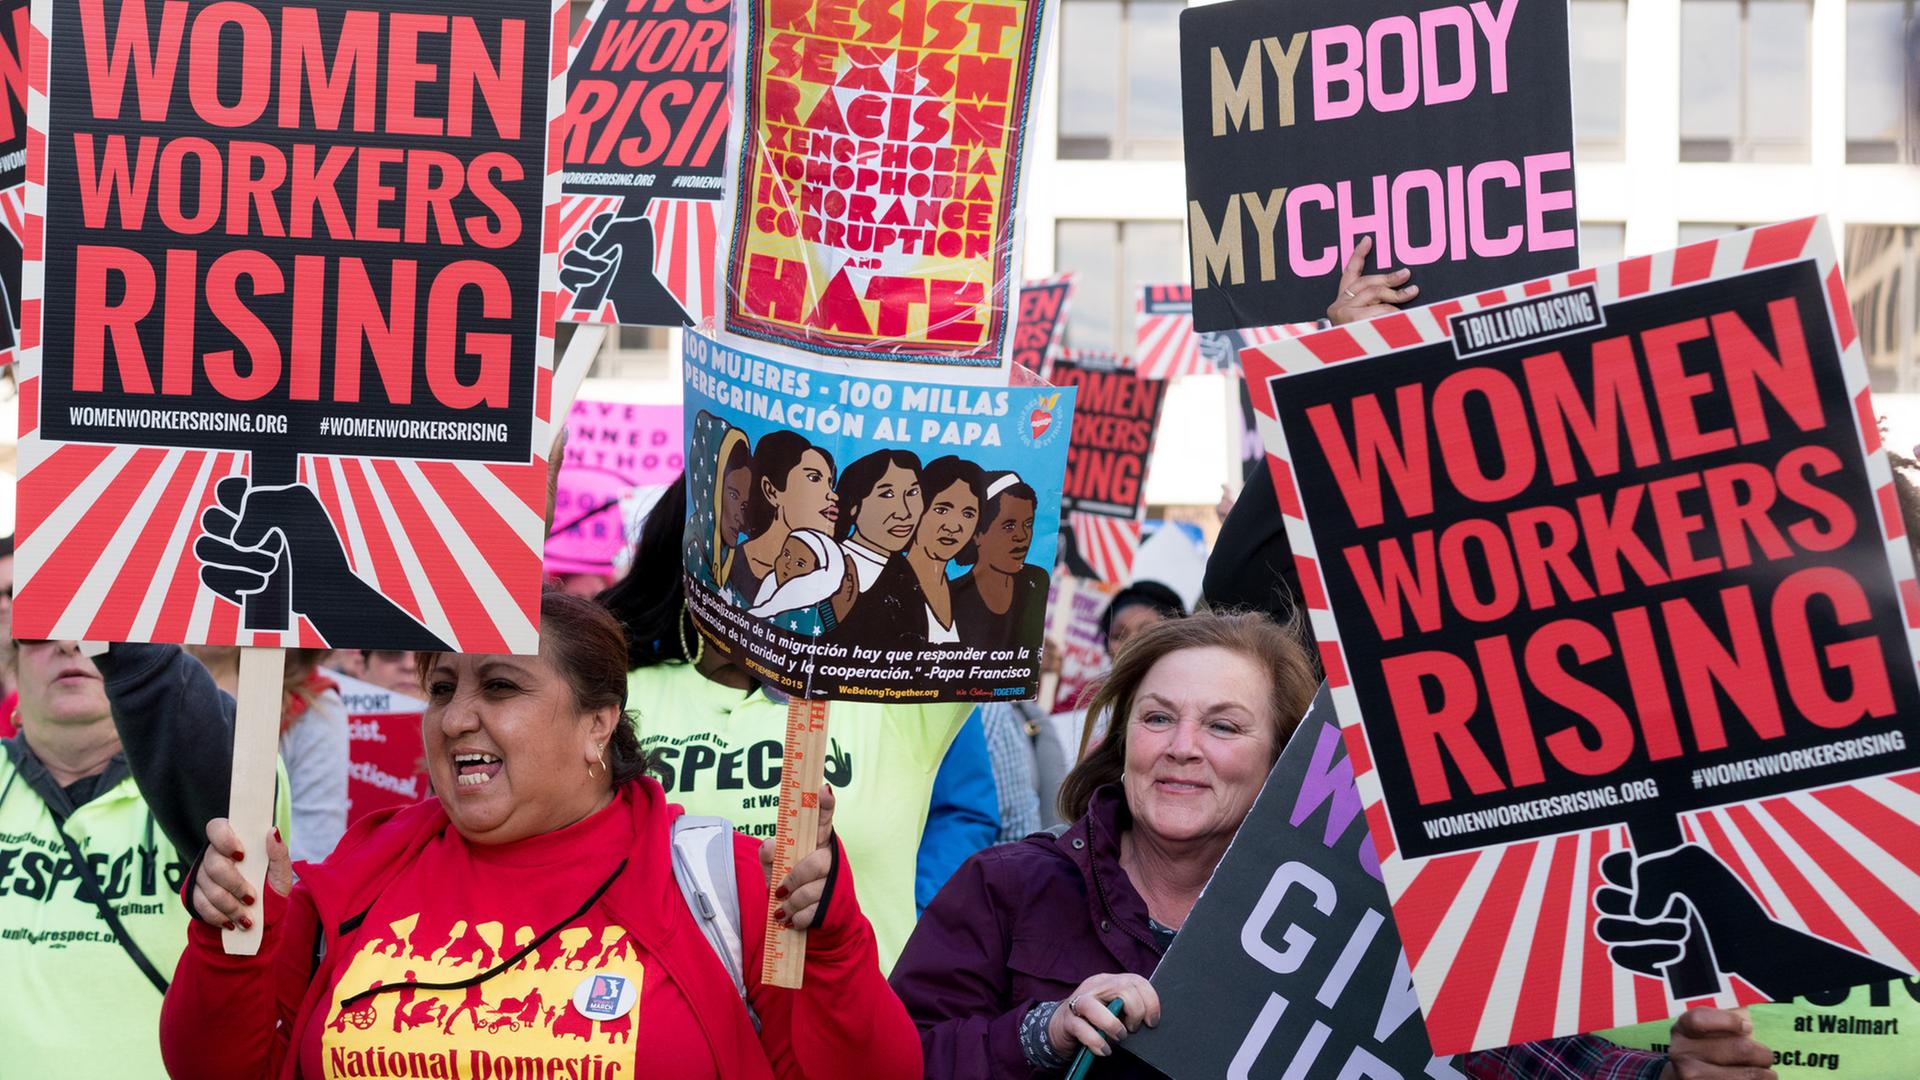 "Frauenprotest und Widerstand - Kampf für ein neues Amerika": Frauen demonstrieren mit Schildern und Plakaten.